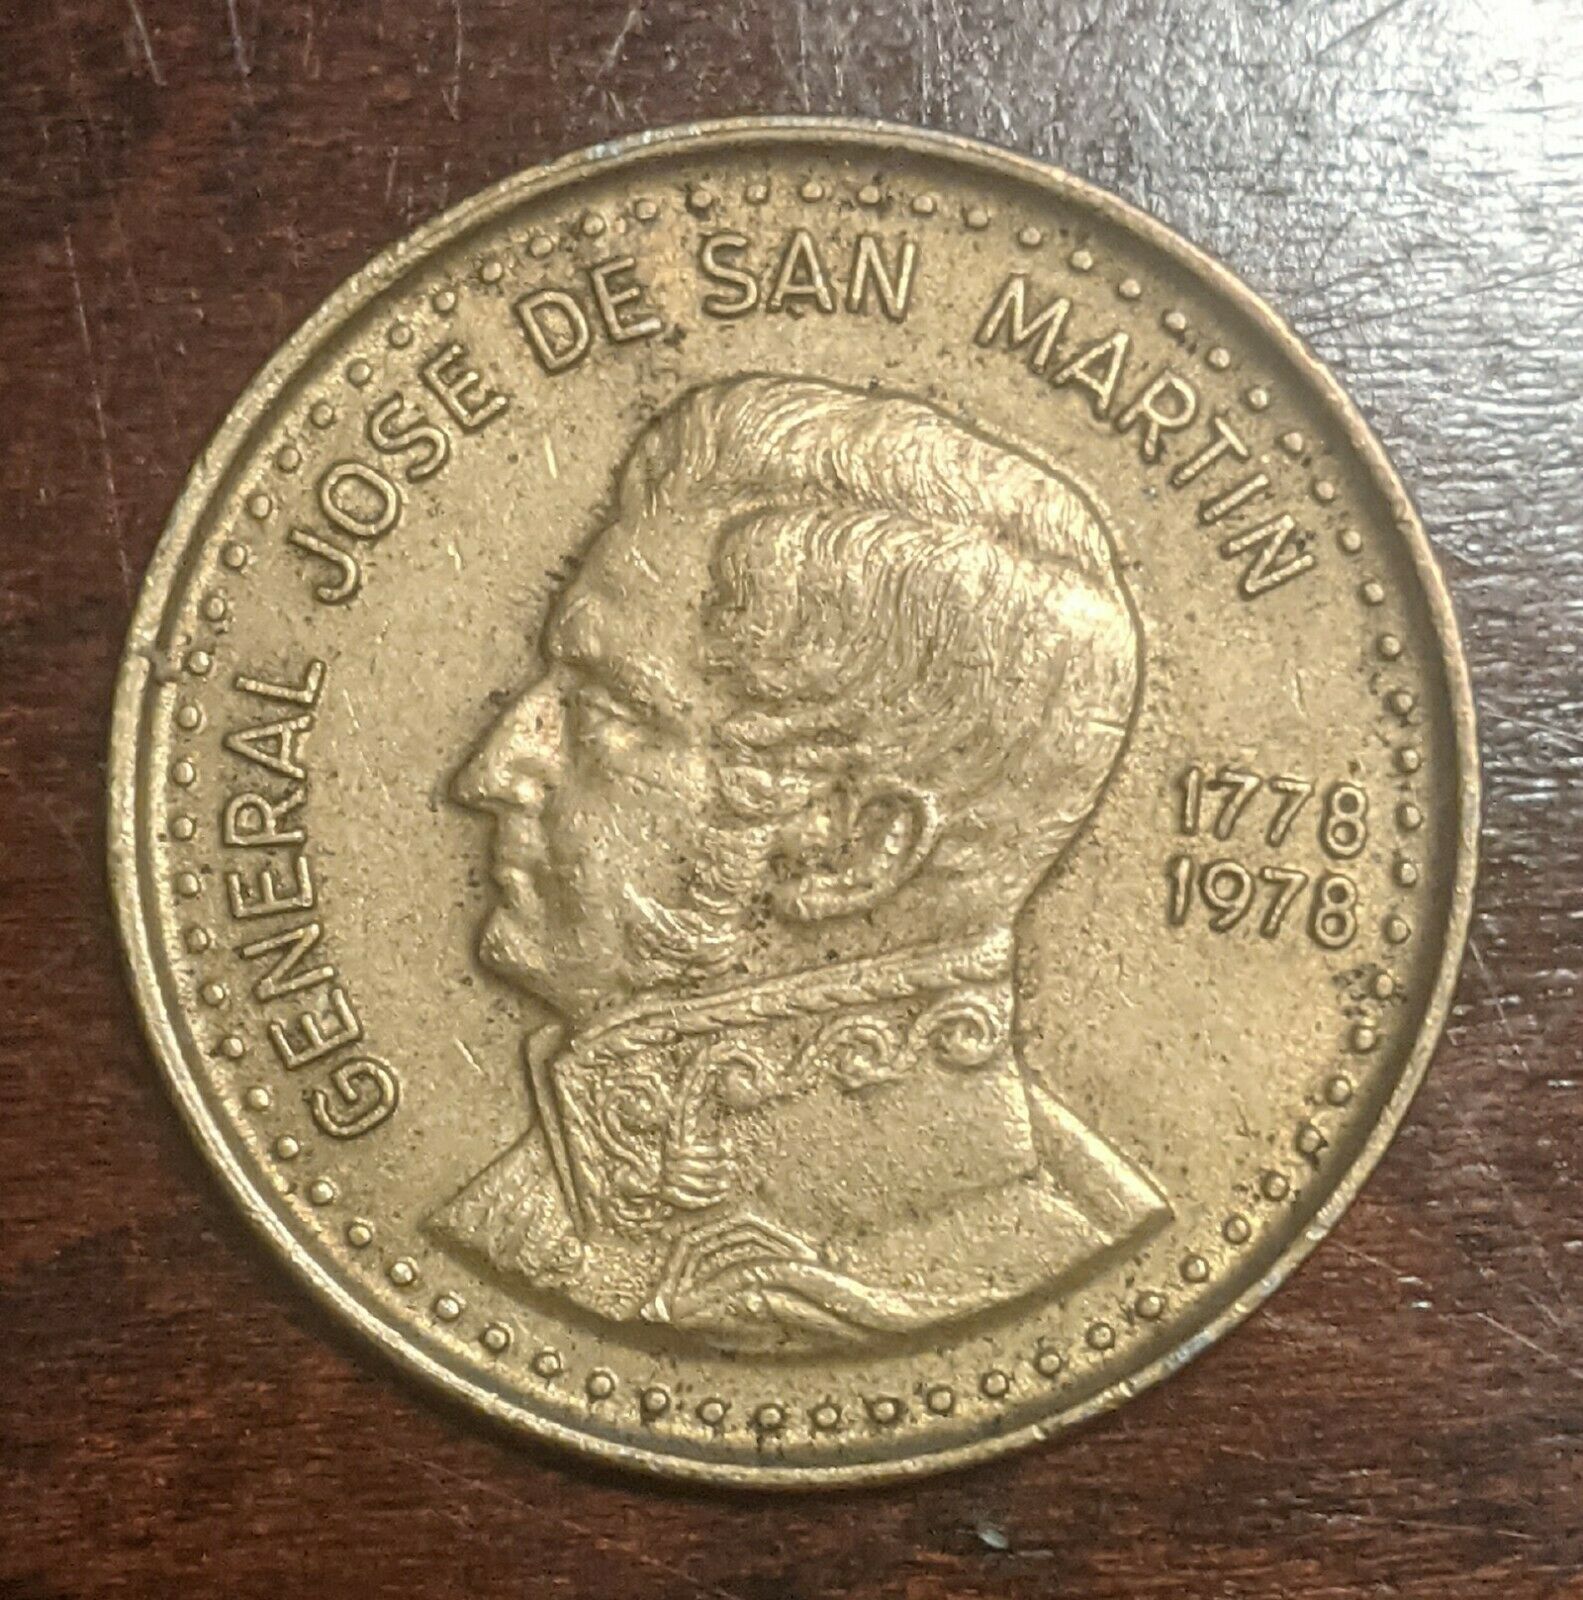 Argentina 100 Pesos 1978 Coin